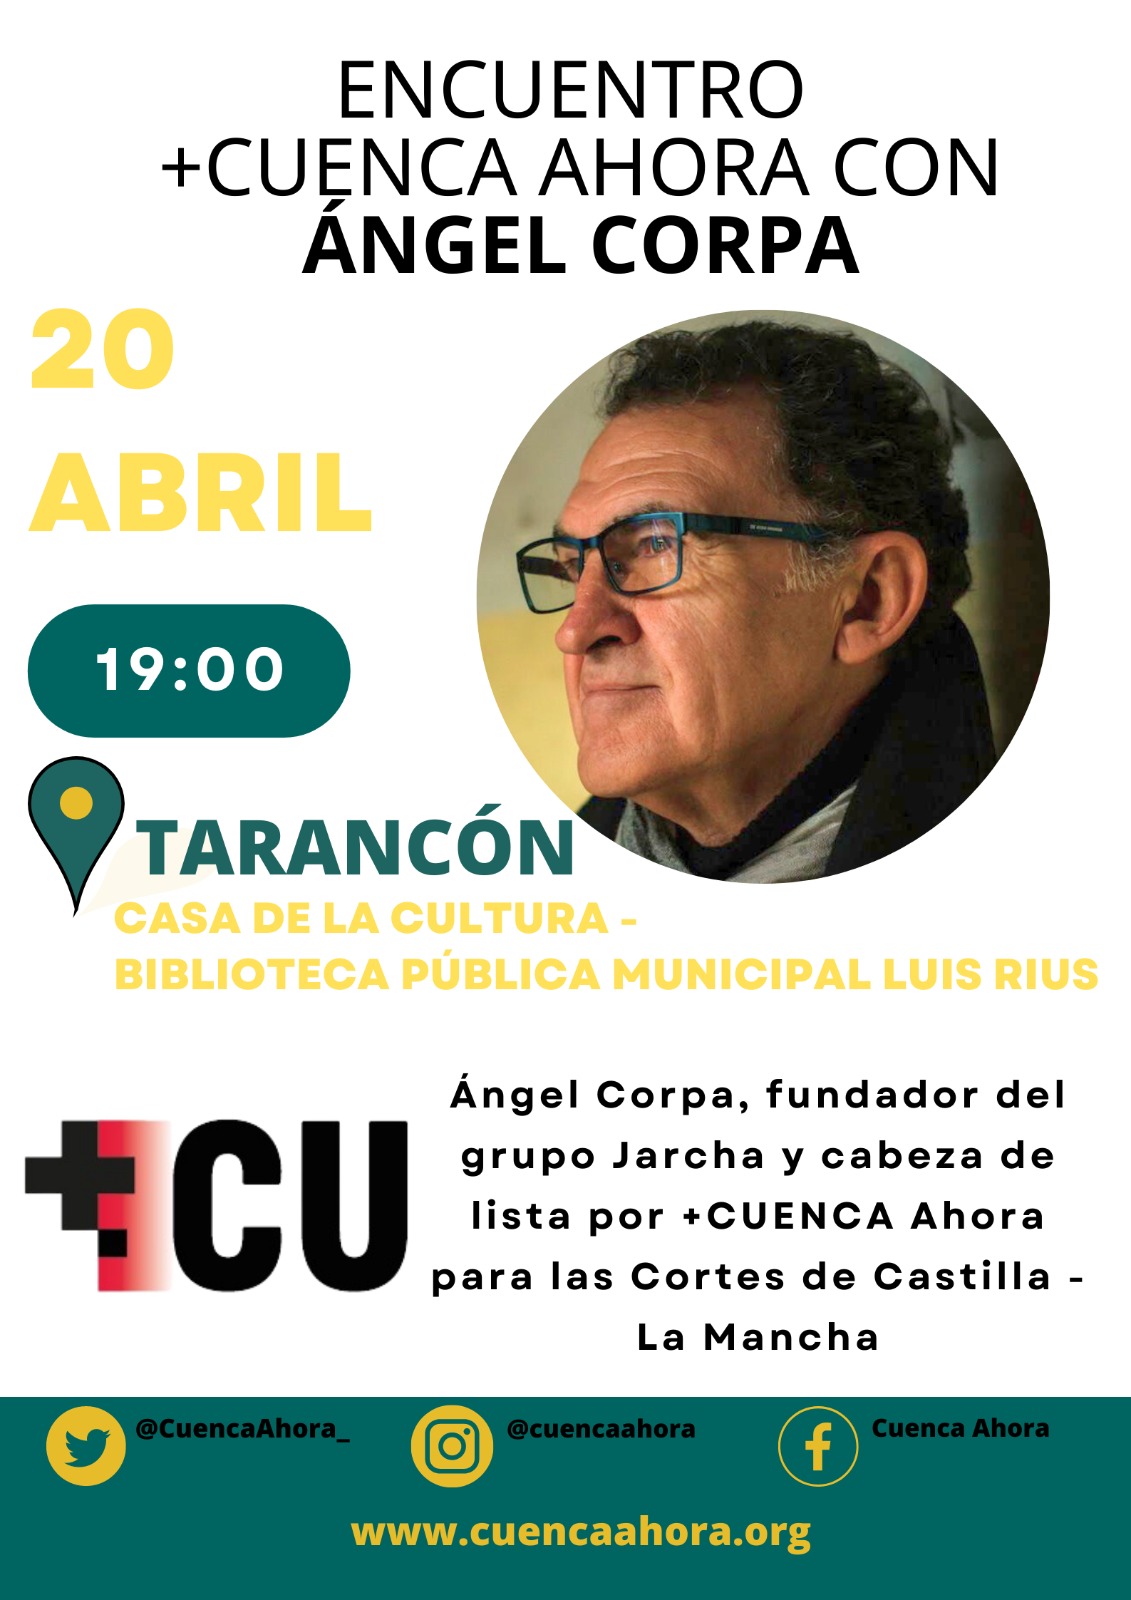 +CUENCA Ahora comienza su ronda de encuentros por la provincia con Ángel Corpa siendo Tarancón, El Provencio y El Pedernoso sus primeros destinos.